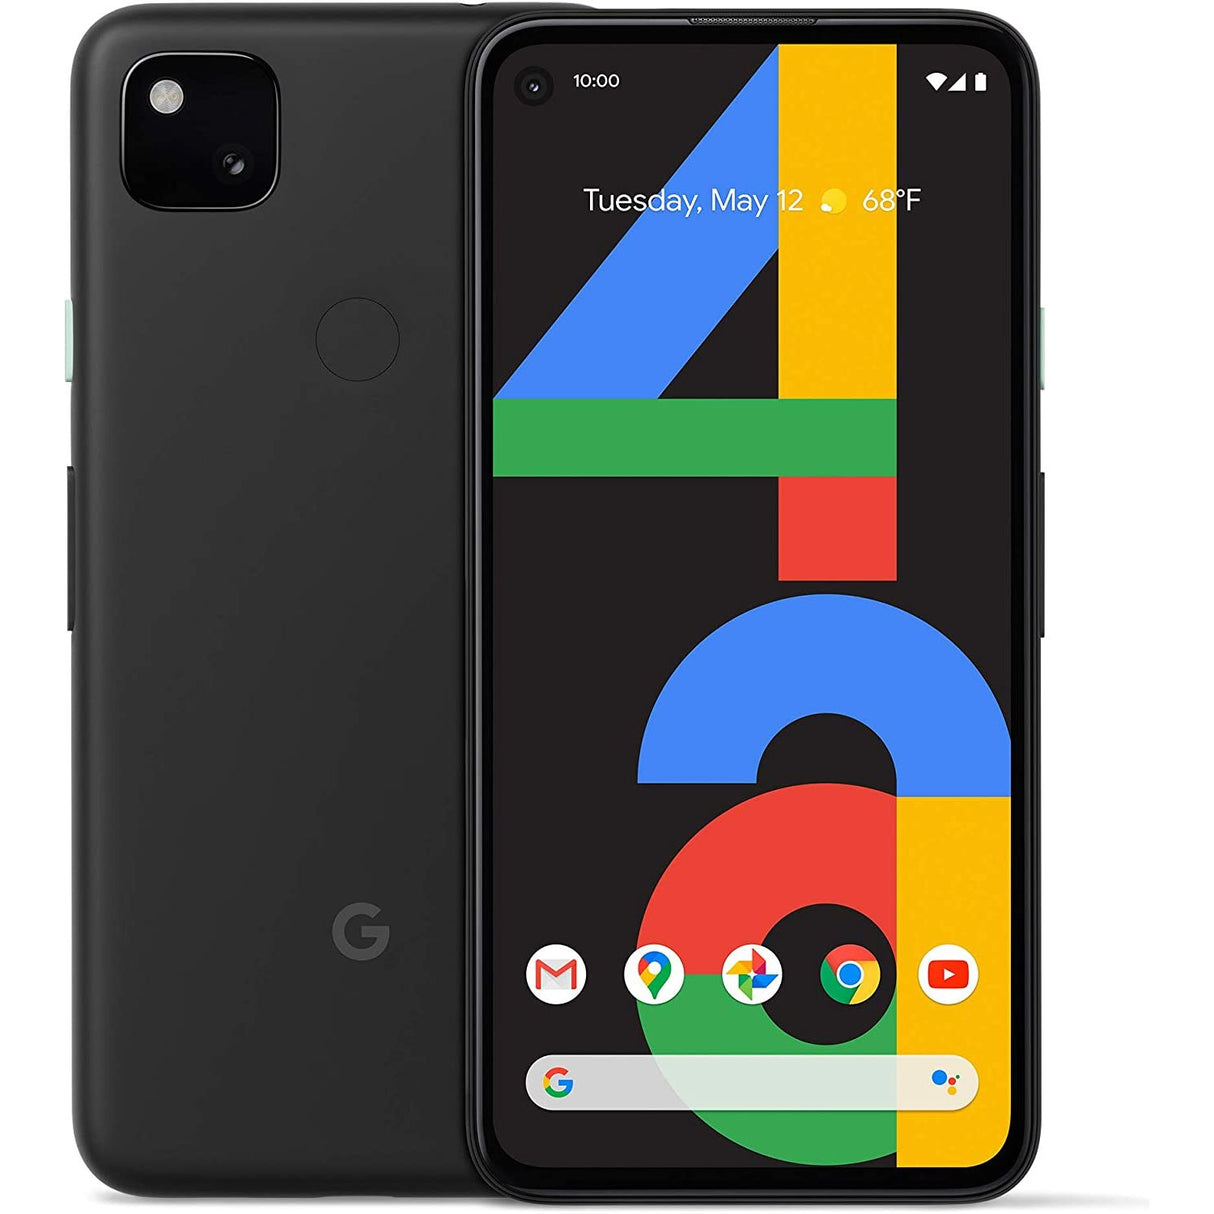 Google Pixel 4a - 128 GB - Just Black - Unlocked